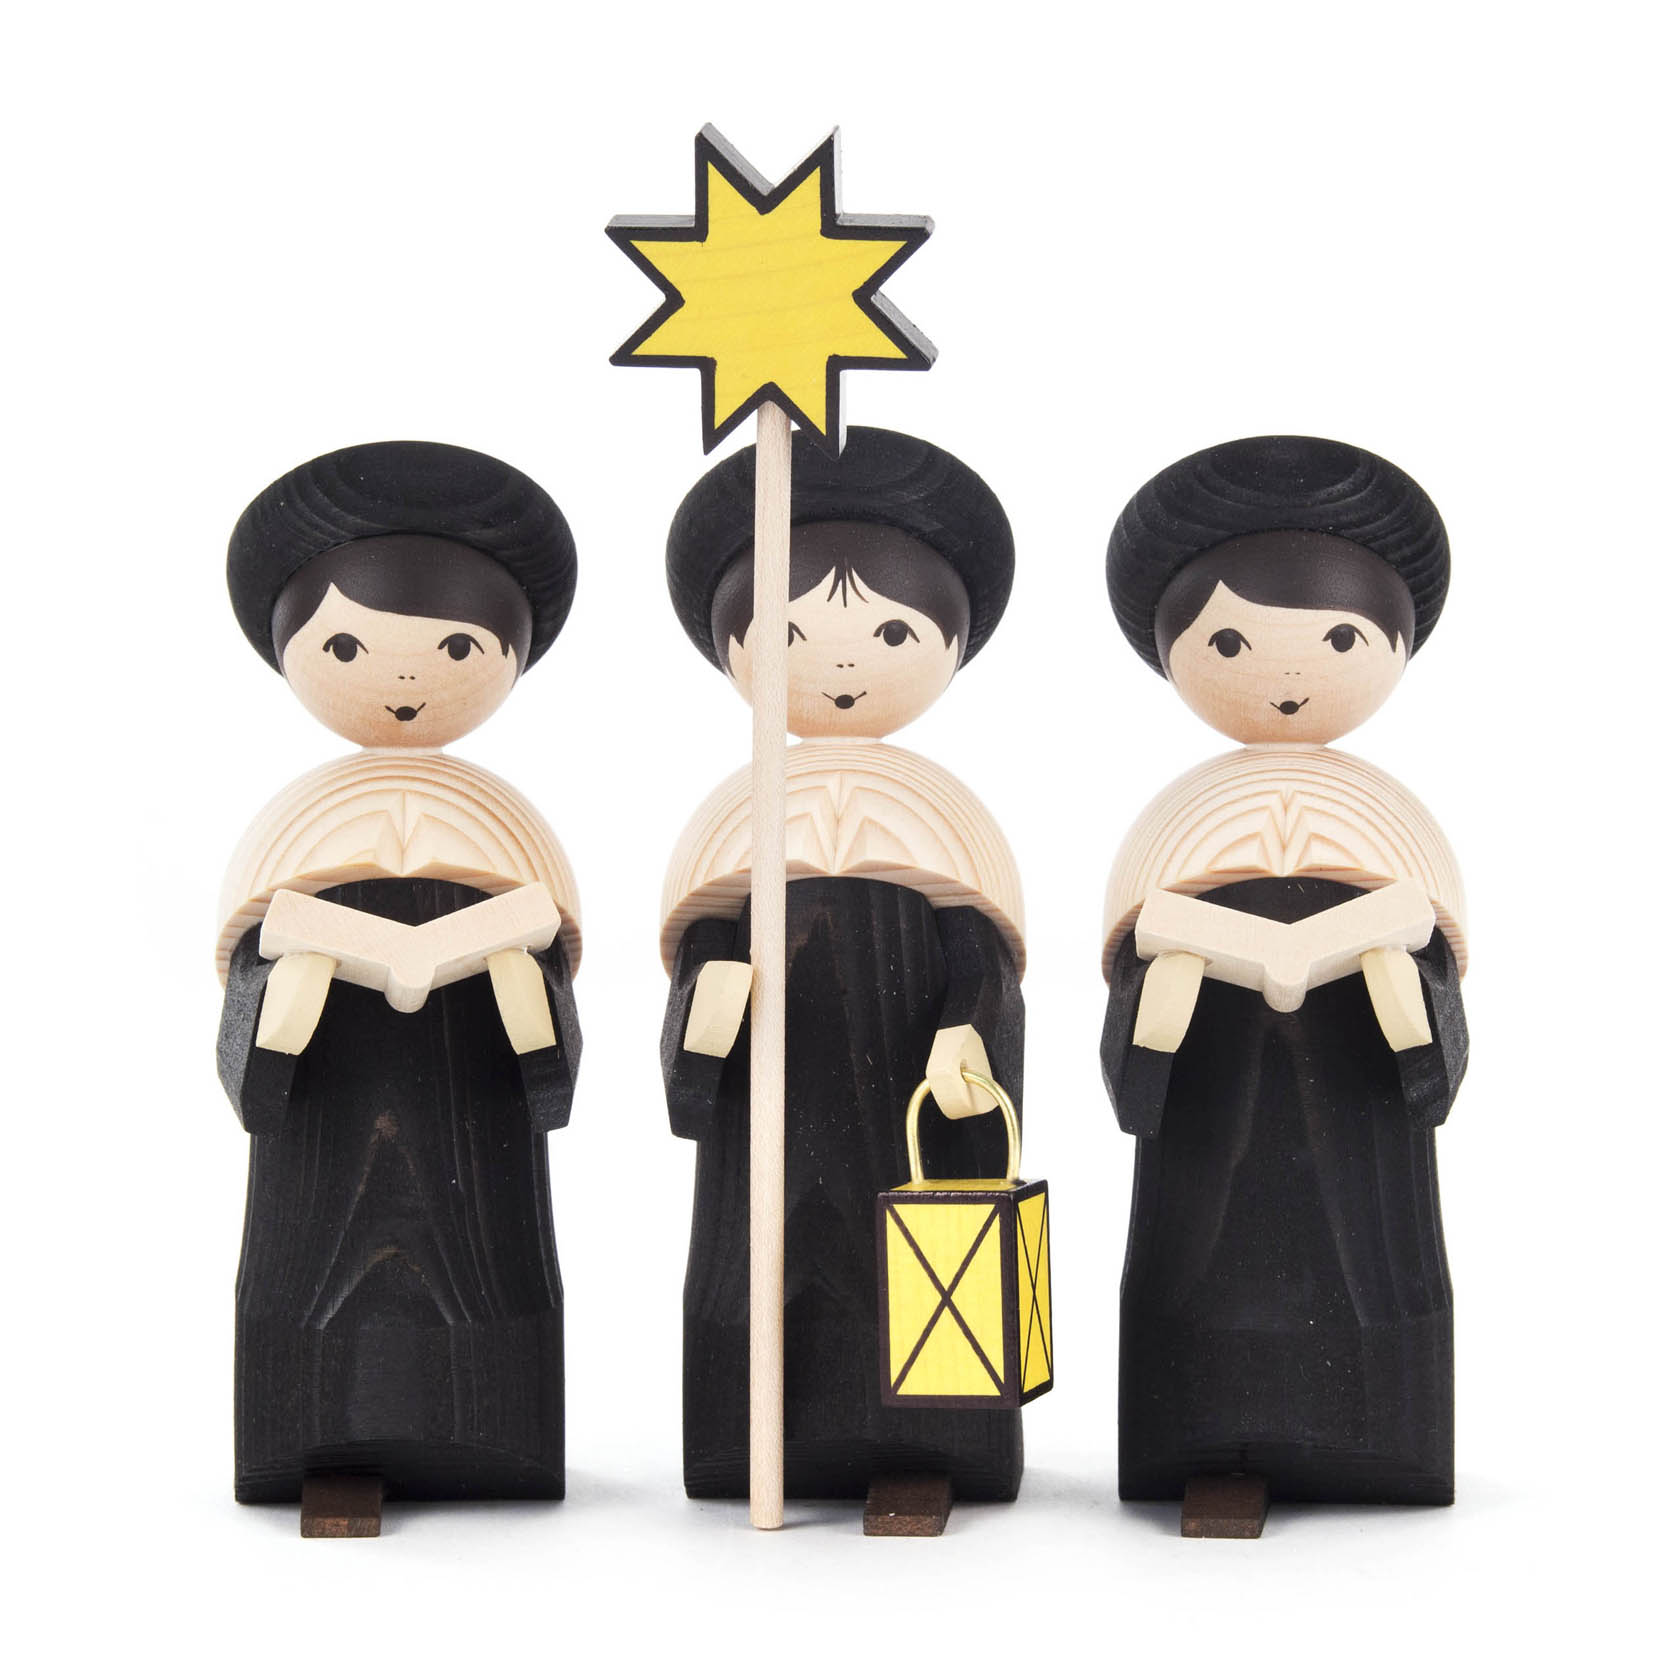 Kurrendefiguren schwarz gebeizt, 17cm (3) im Dregeno Online Shop günstig kaufen